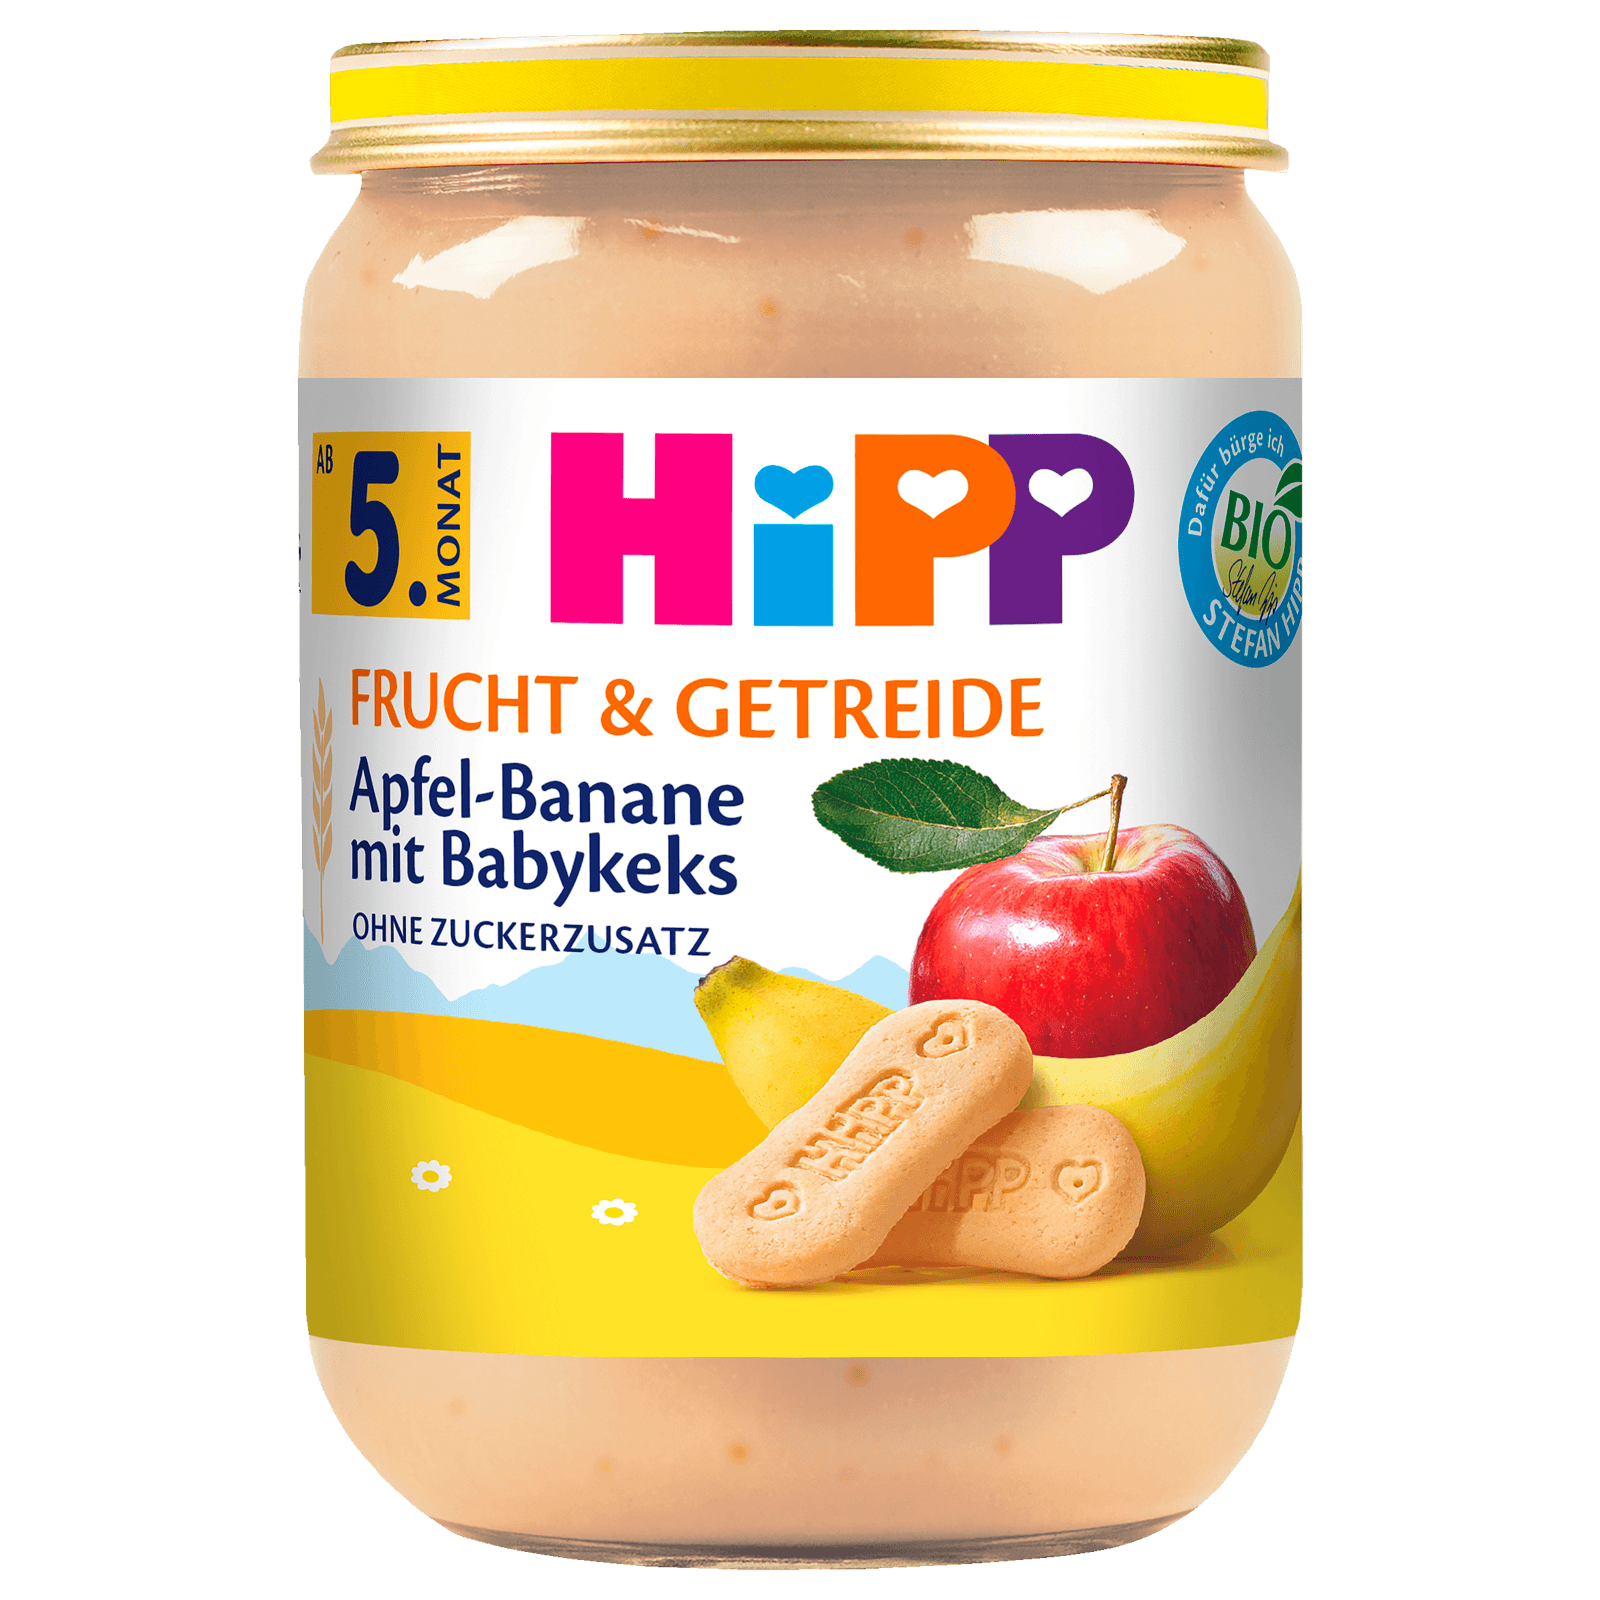 Hipp Bio Frucht & Getreide Apfel-Banane mit Babykeks 190g